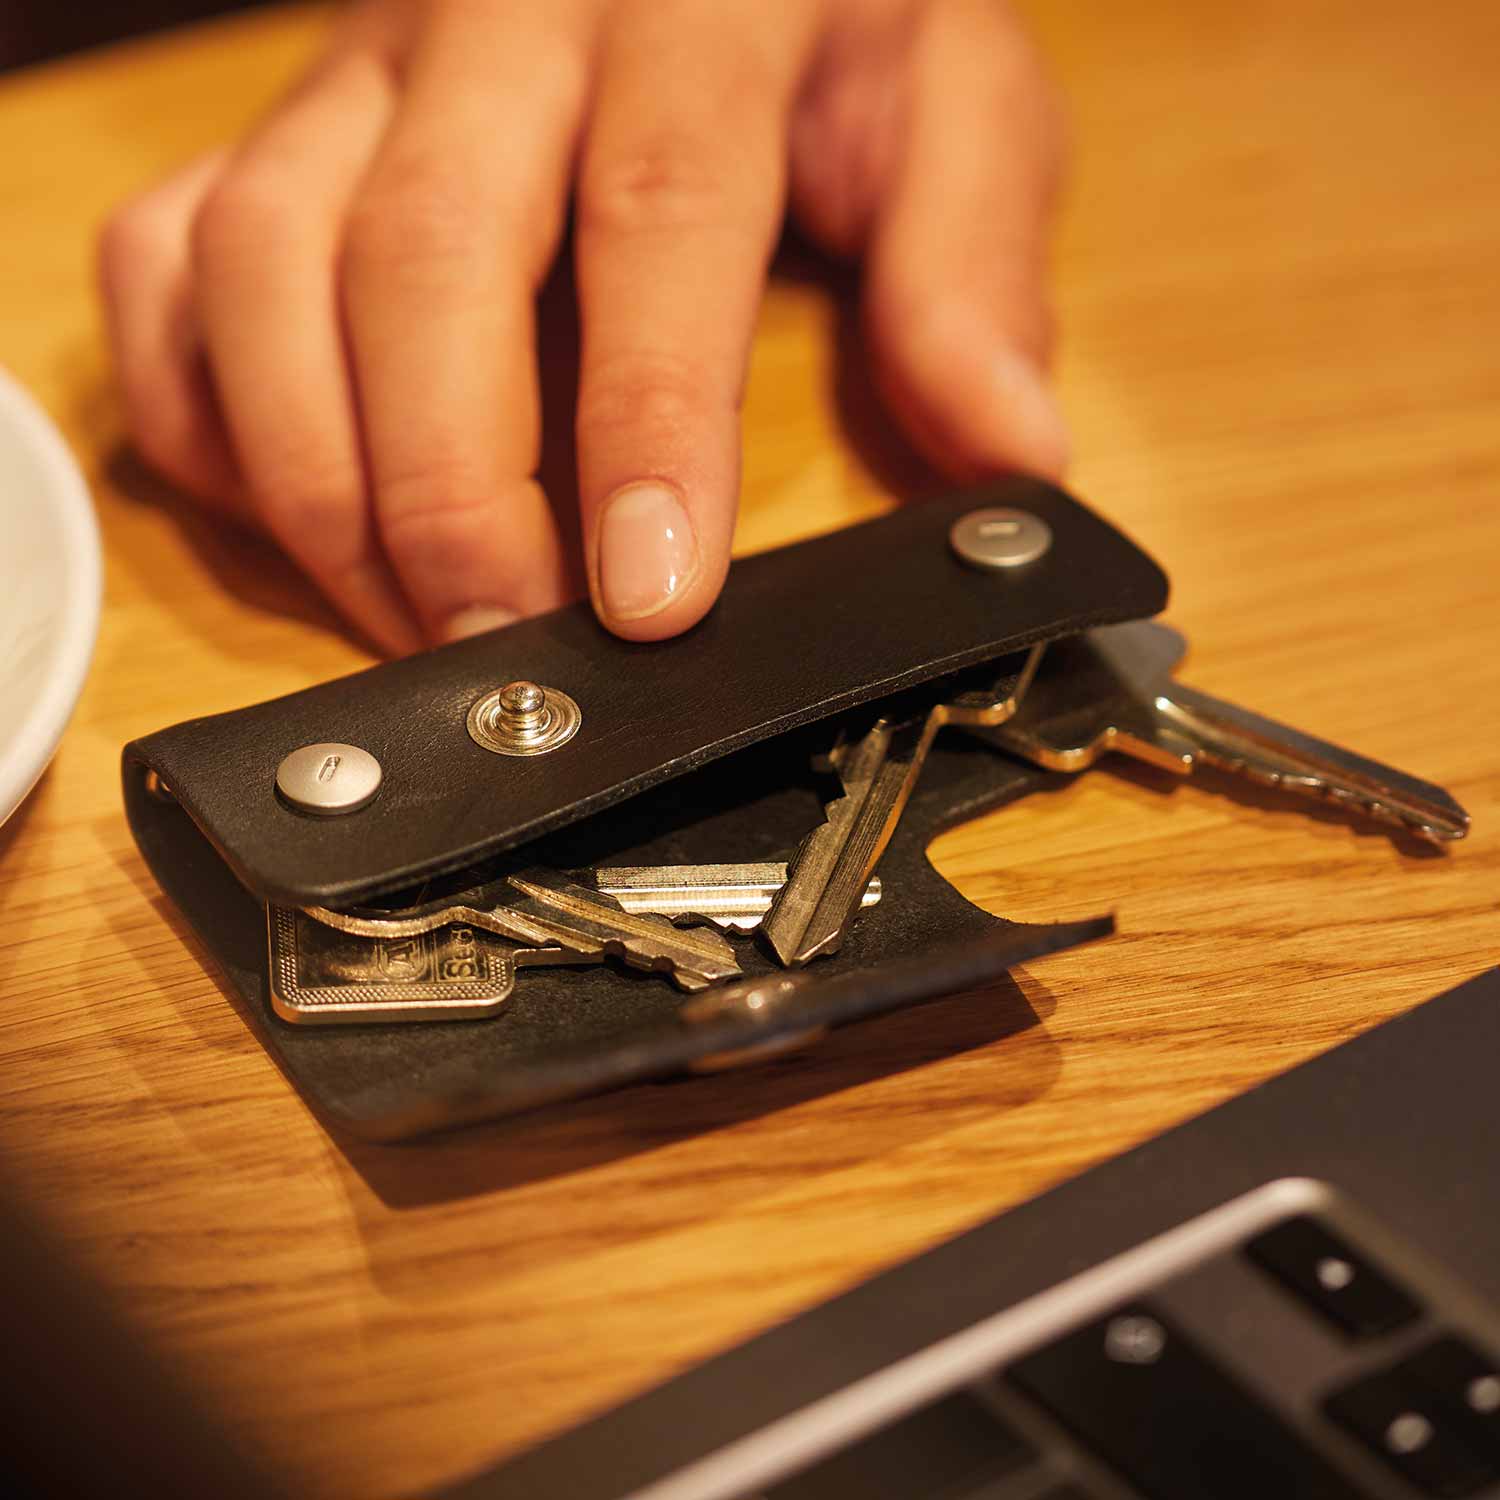 Schlüsseletui EMIL von Goodwilhelm in der Farbe black liegt mit Schlüsseln auf einem Tisch